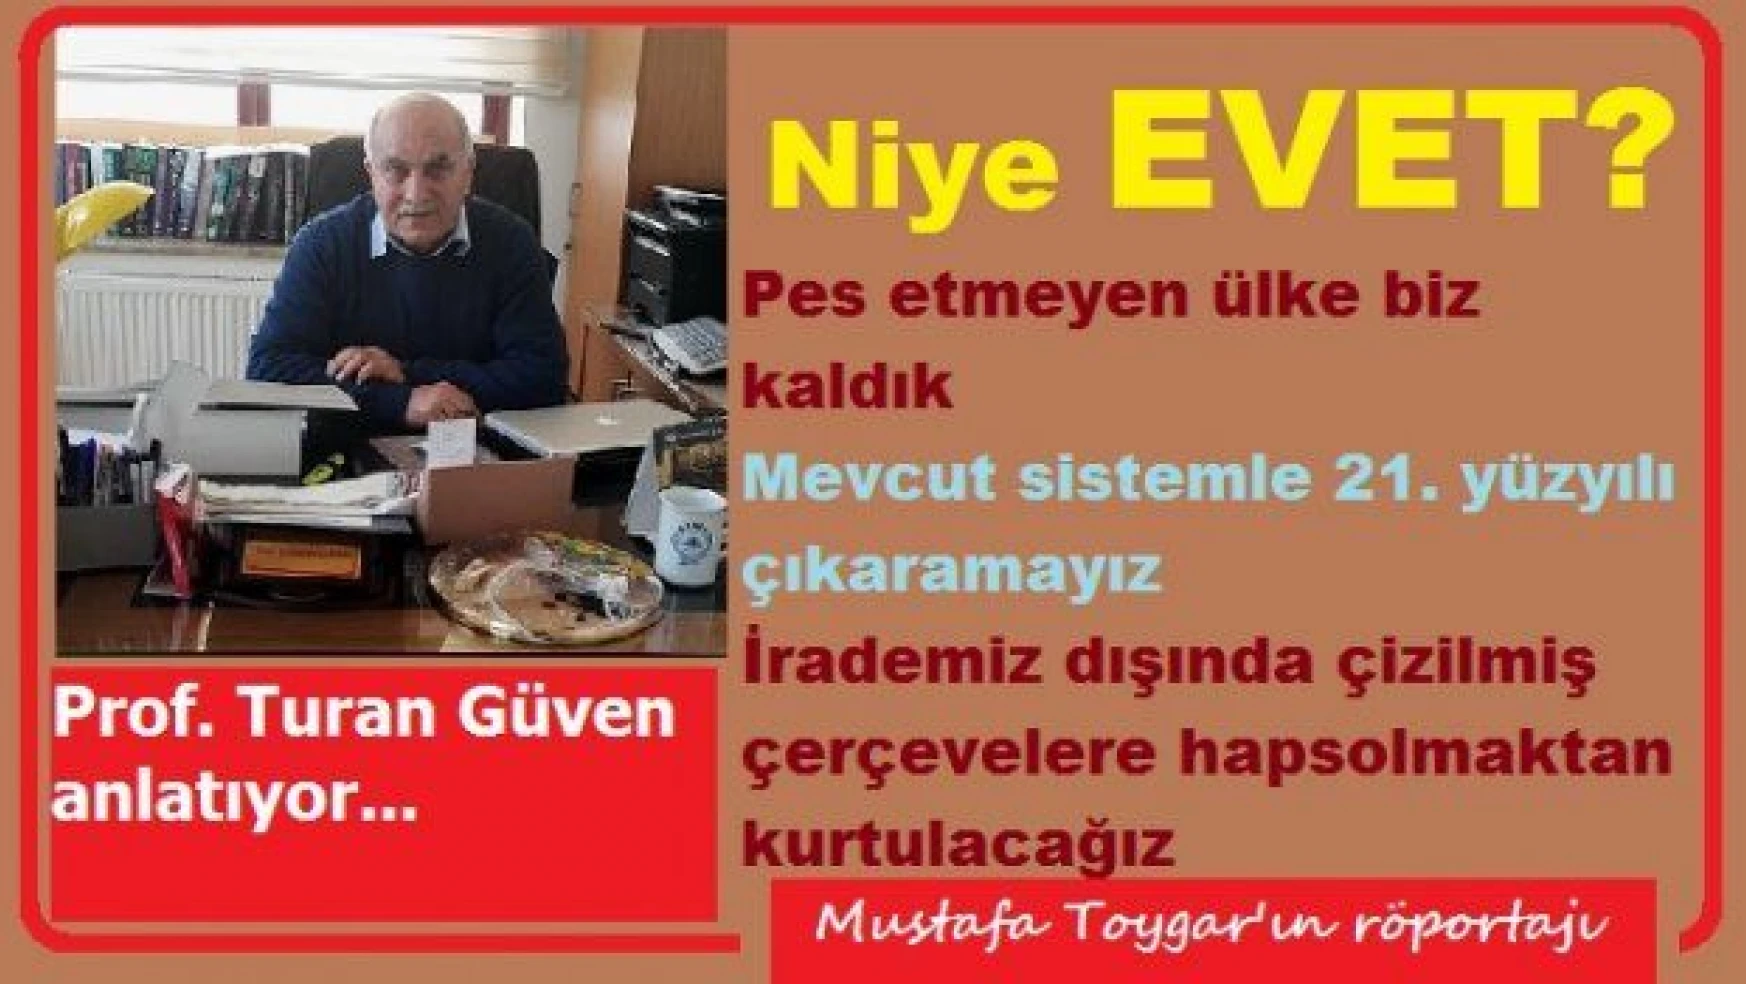 Prof. Turan Güven neden EVET diyor?